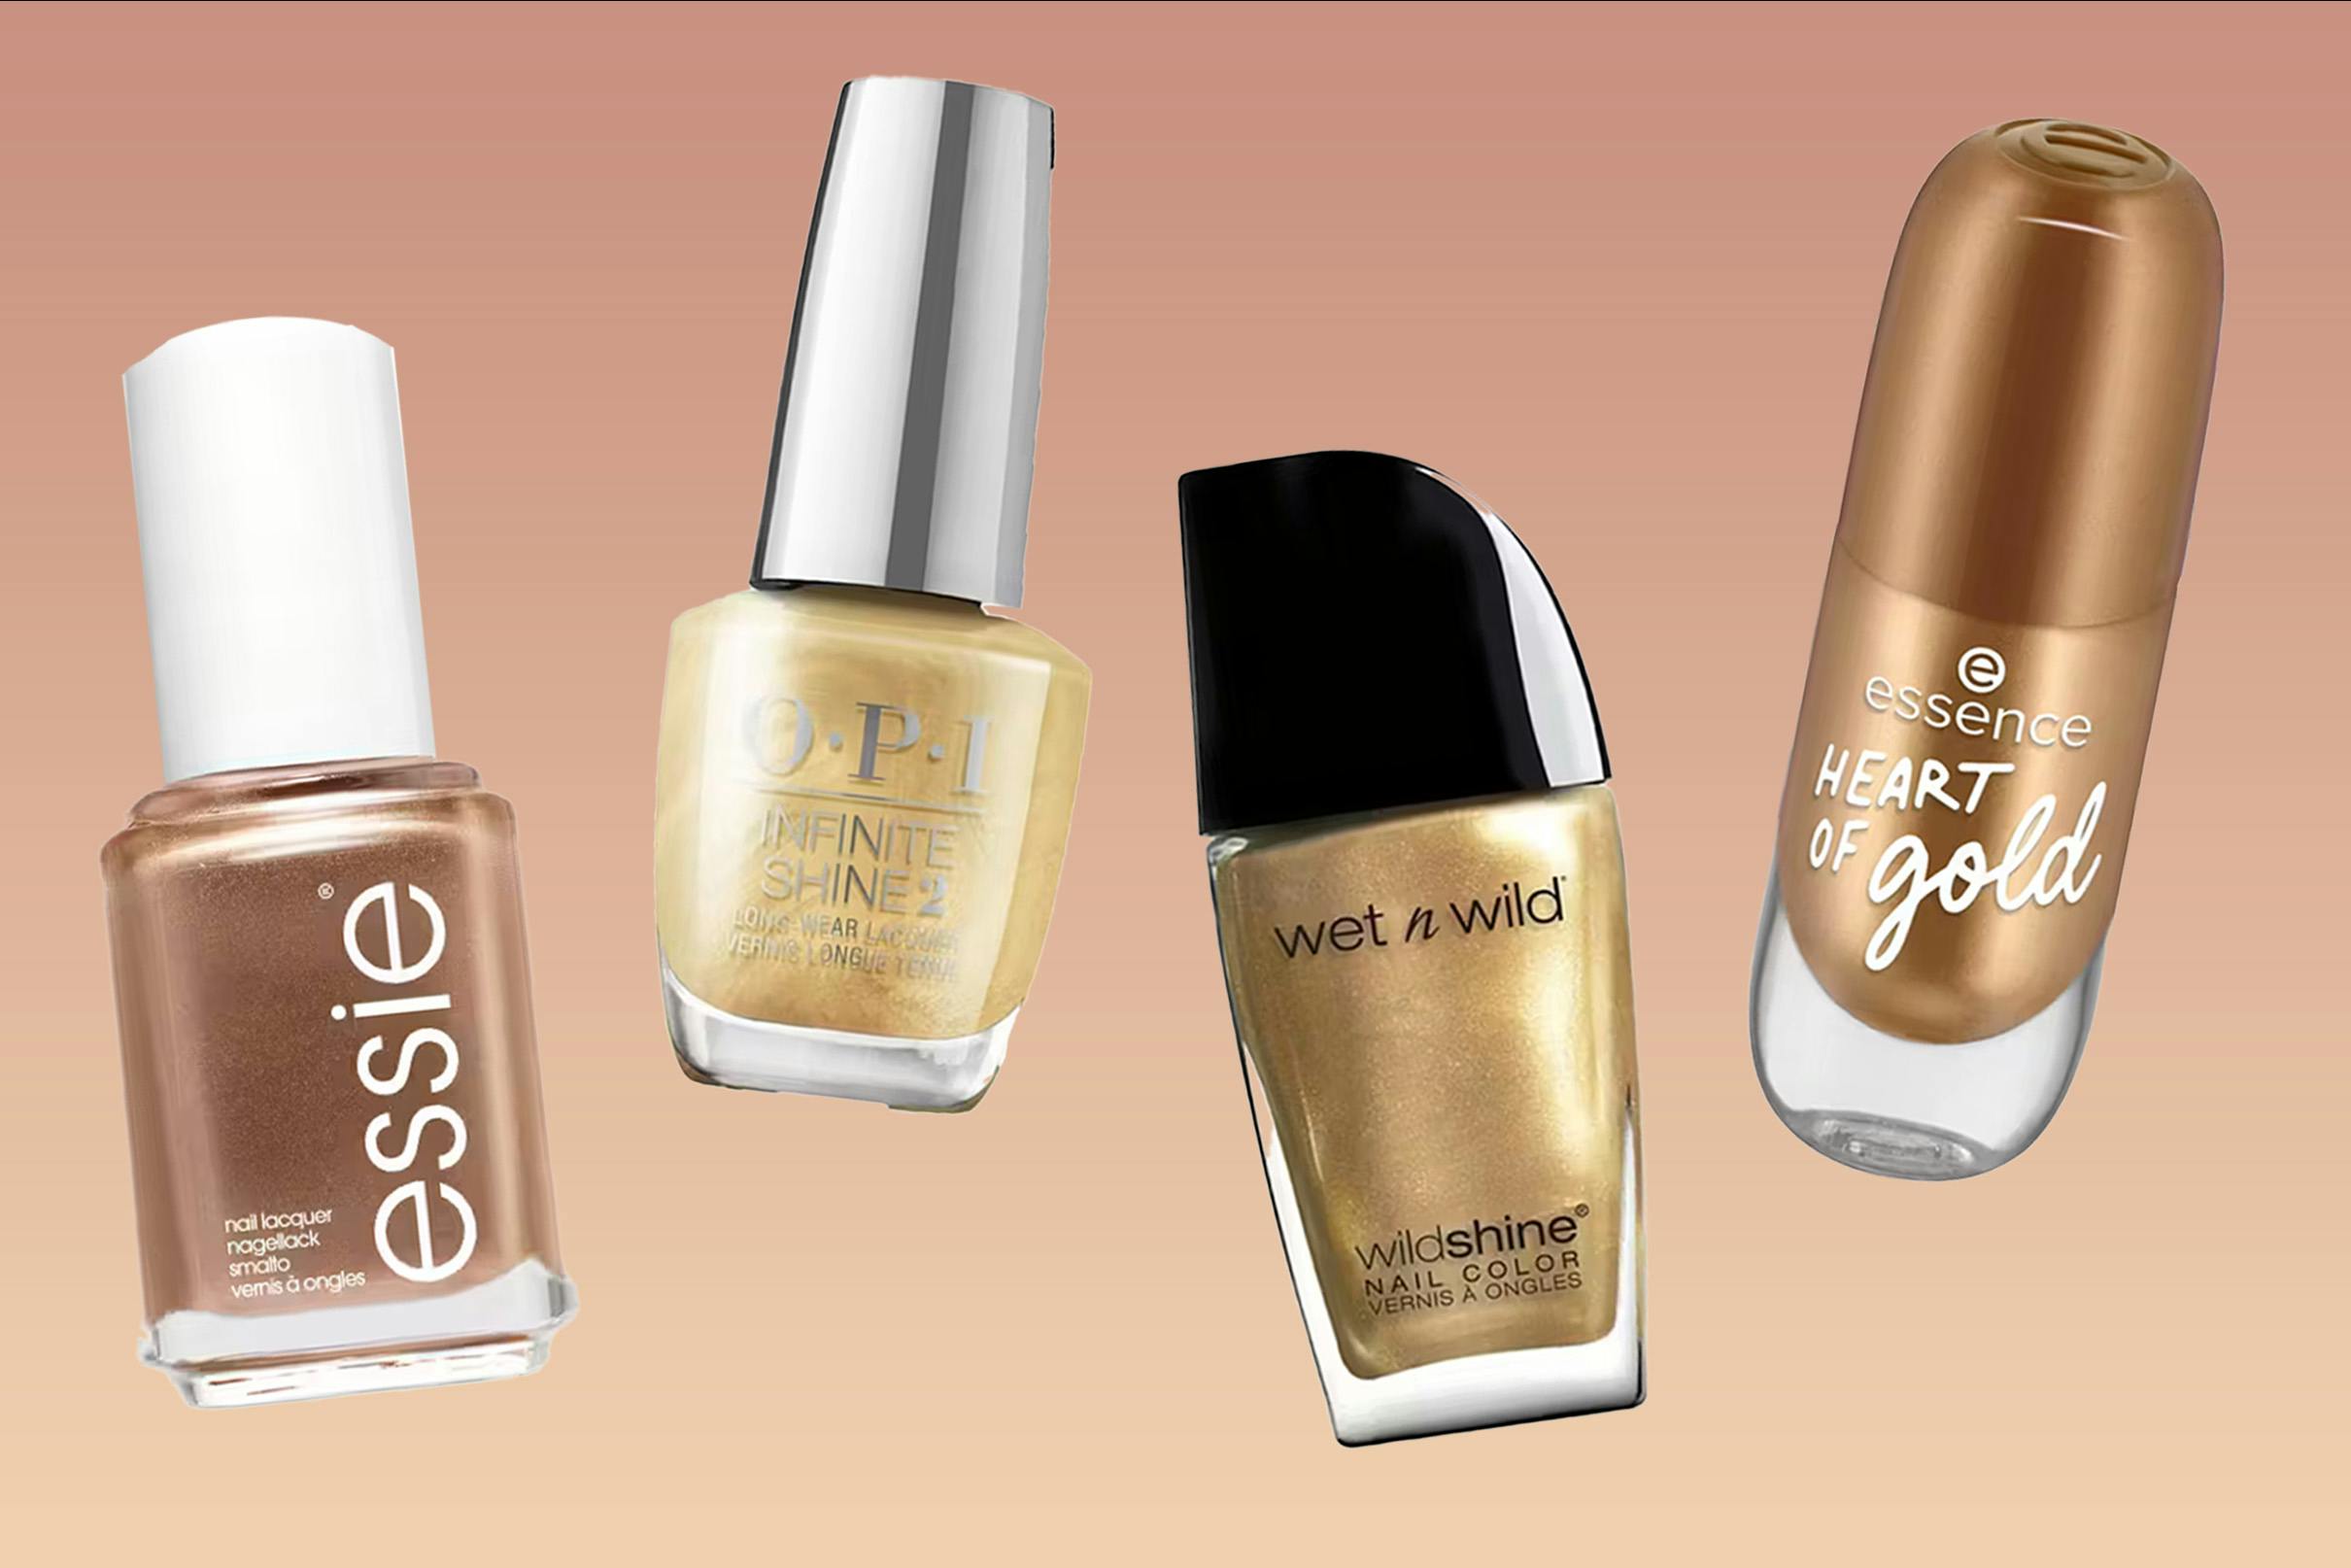 Gull neglelakk: Skap luksus og glamour på neglene dine